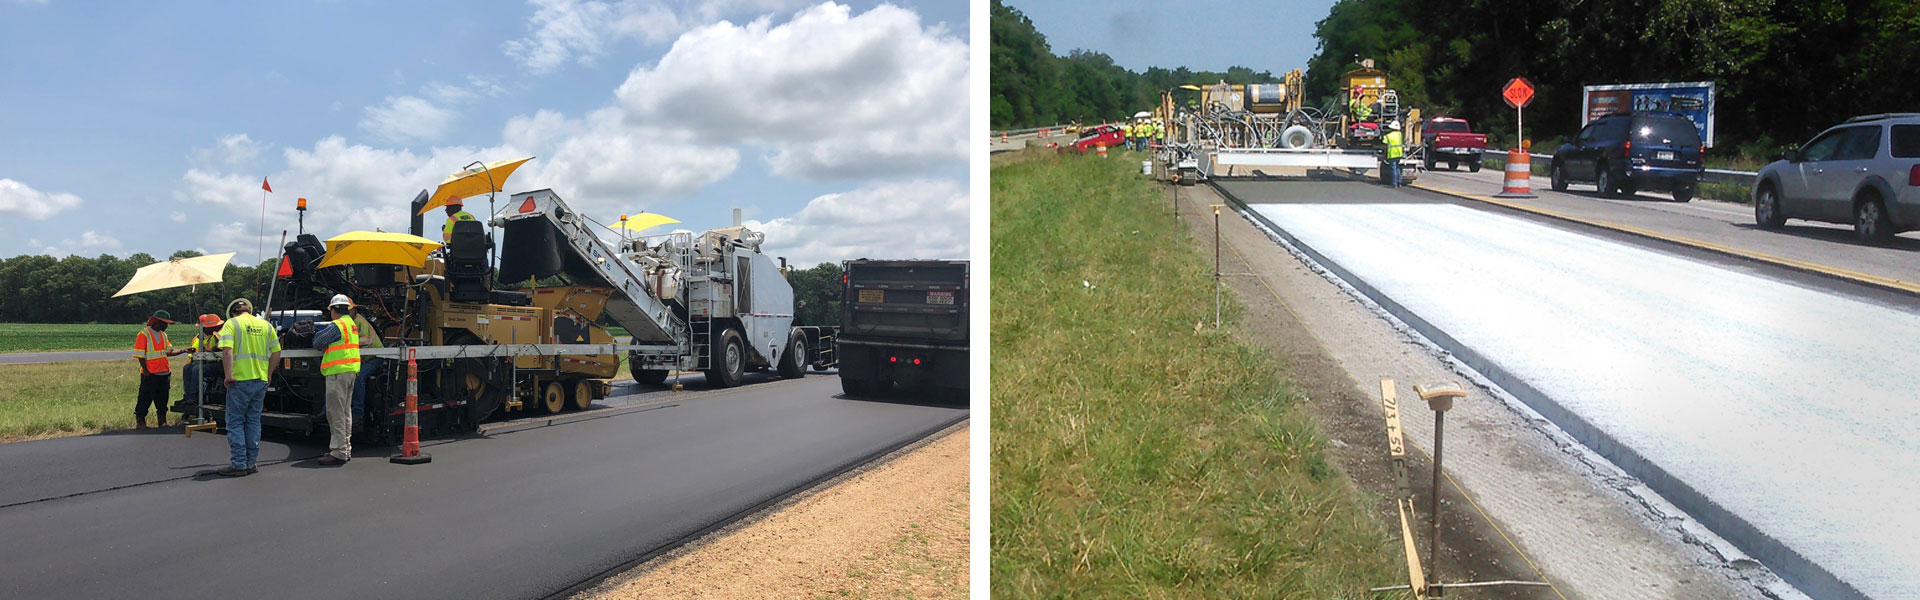 Photo on left of asphalt paving jobsite. Photo on right of concrete paving jobsite.